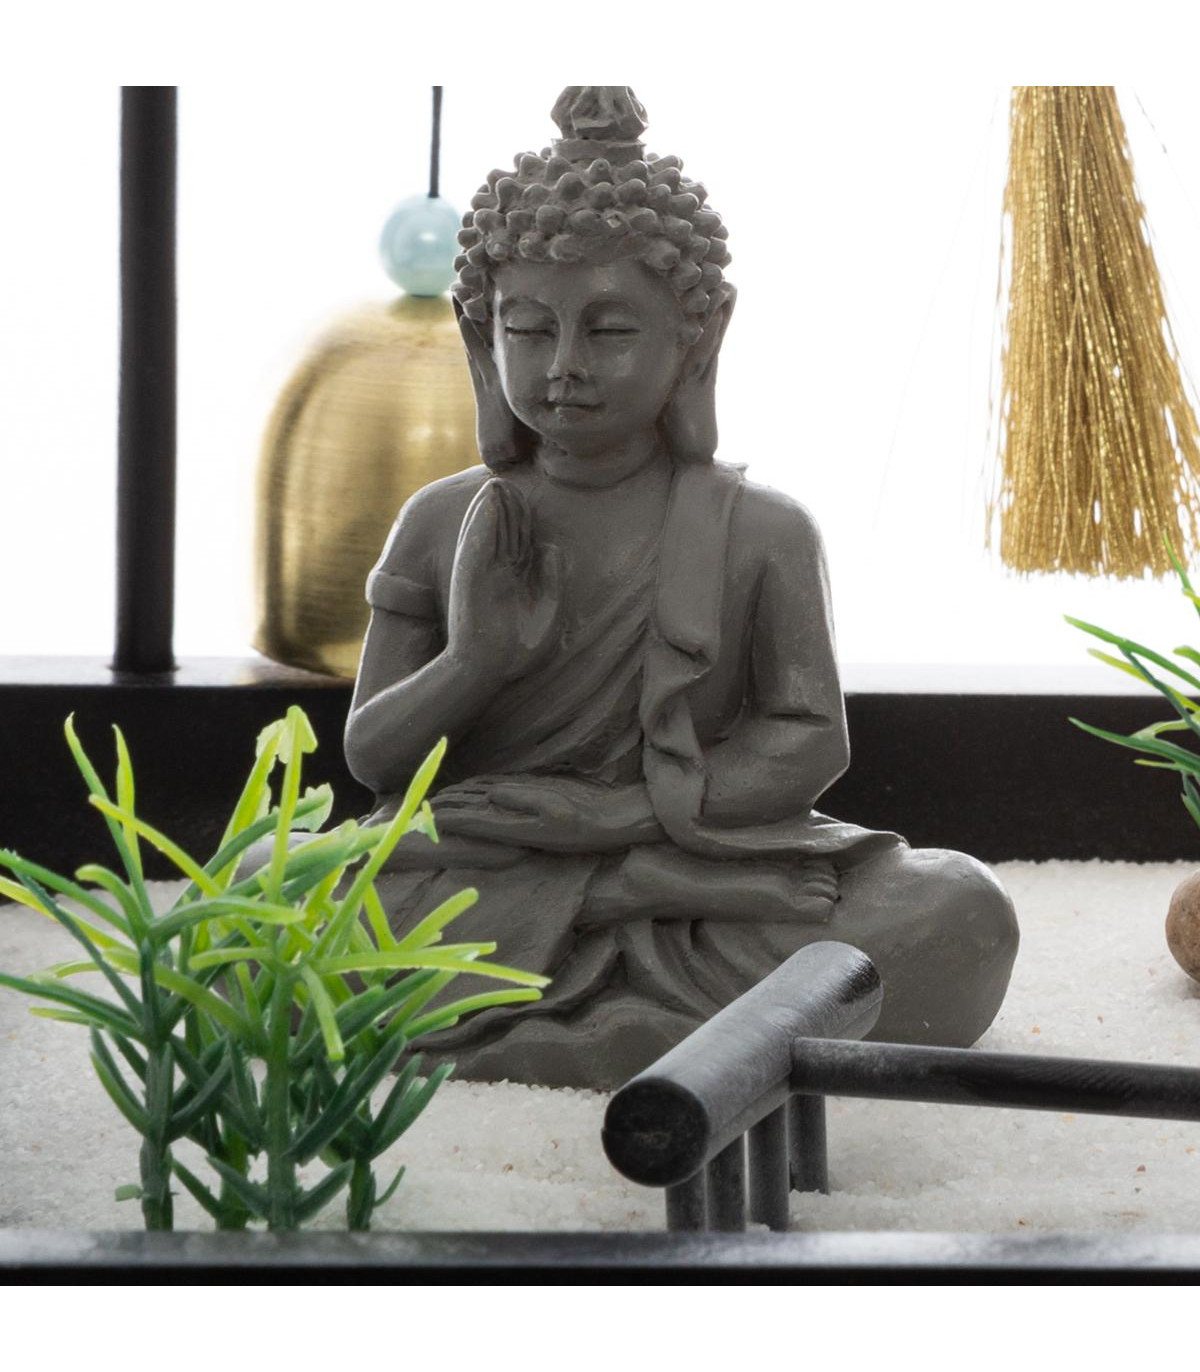 Coffret Complet Jardin Zen Bouddha Sur Un Plateau Avec Décoration destiné Bouddha Pour Jardin Zen